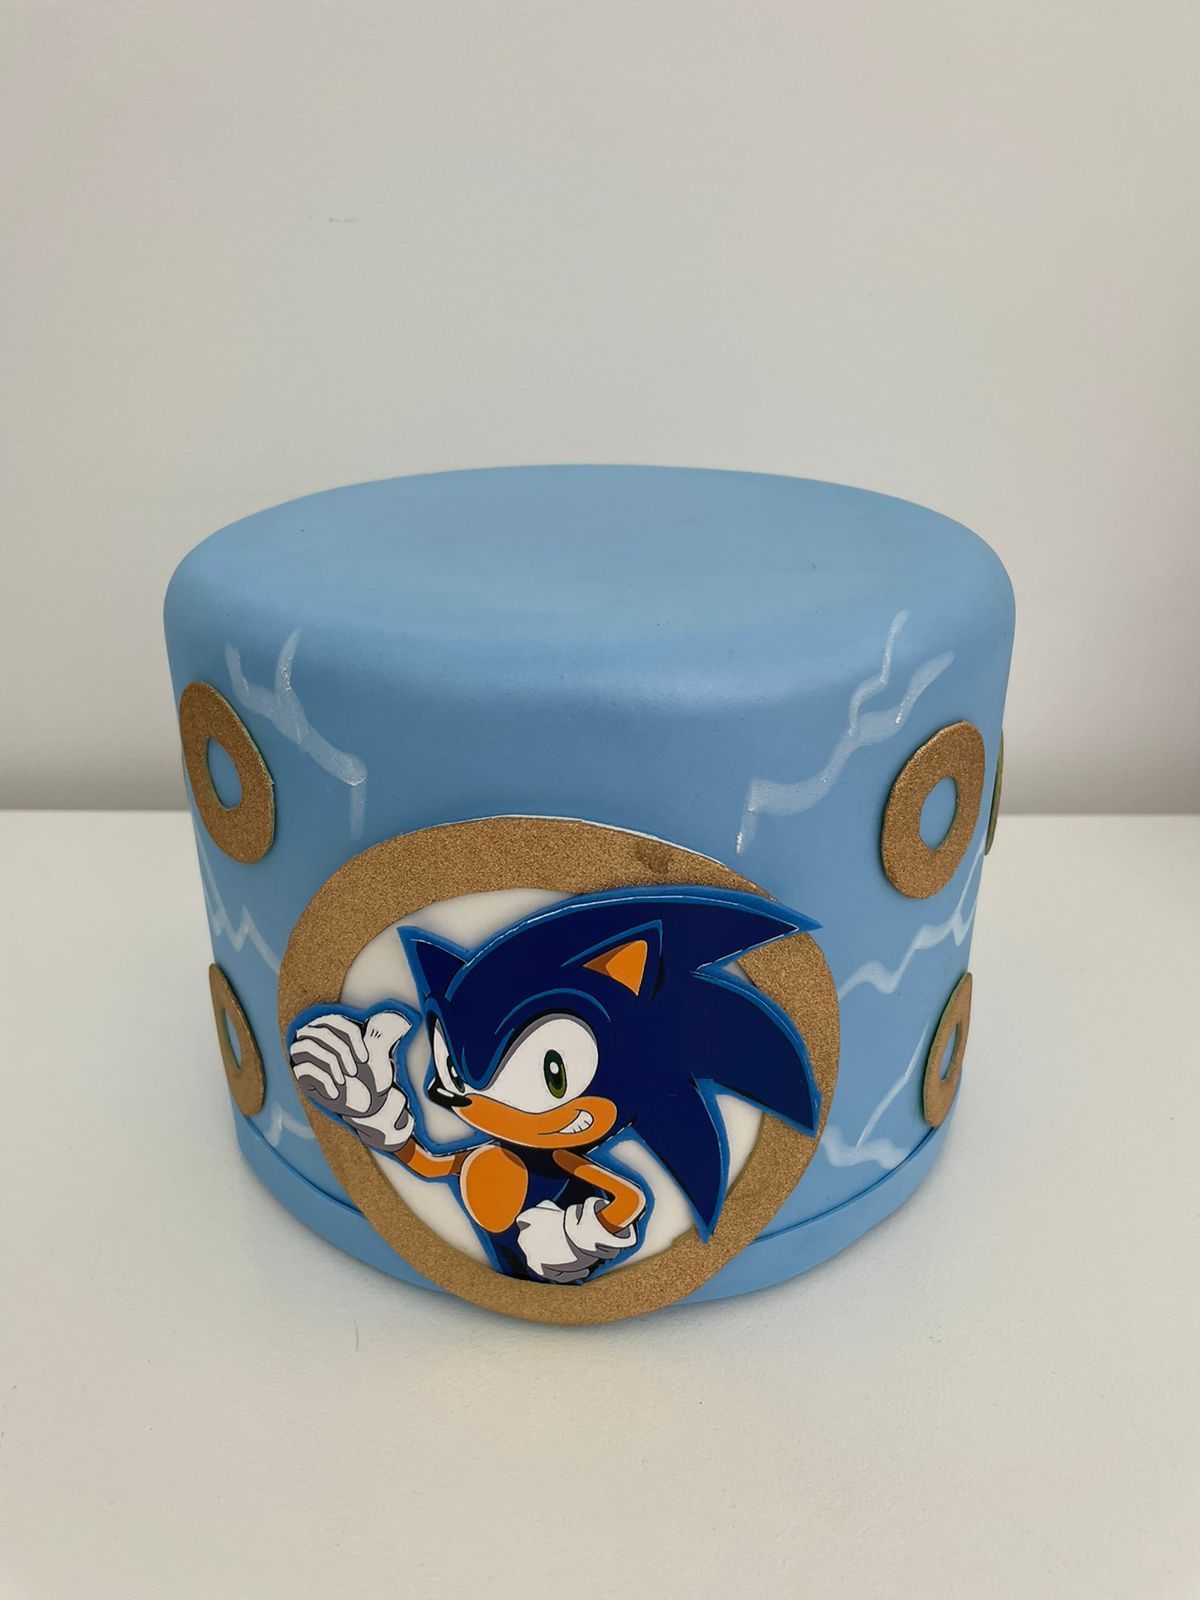 Artes de Monizinha - Bolo Fake Sonic 💙 . Hoje falamos de jogos